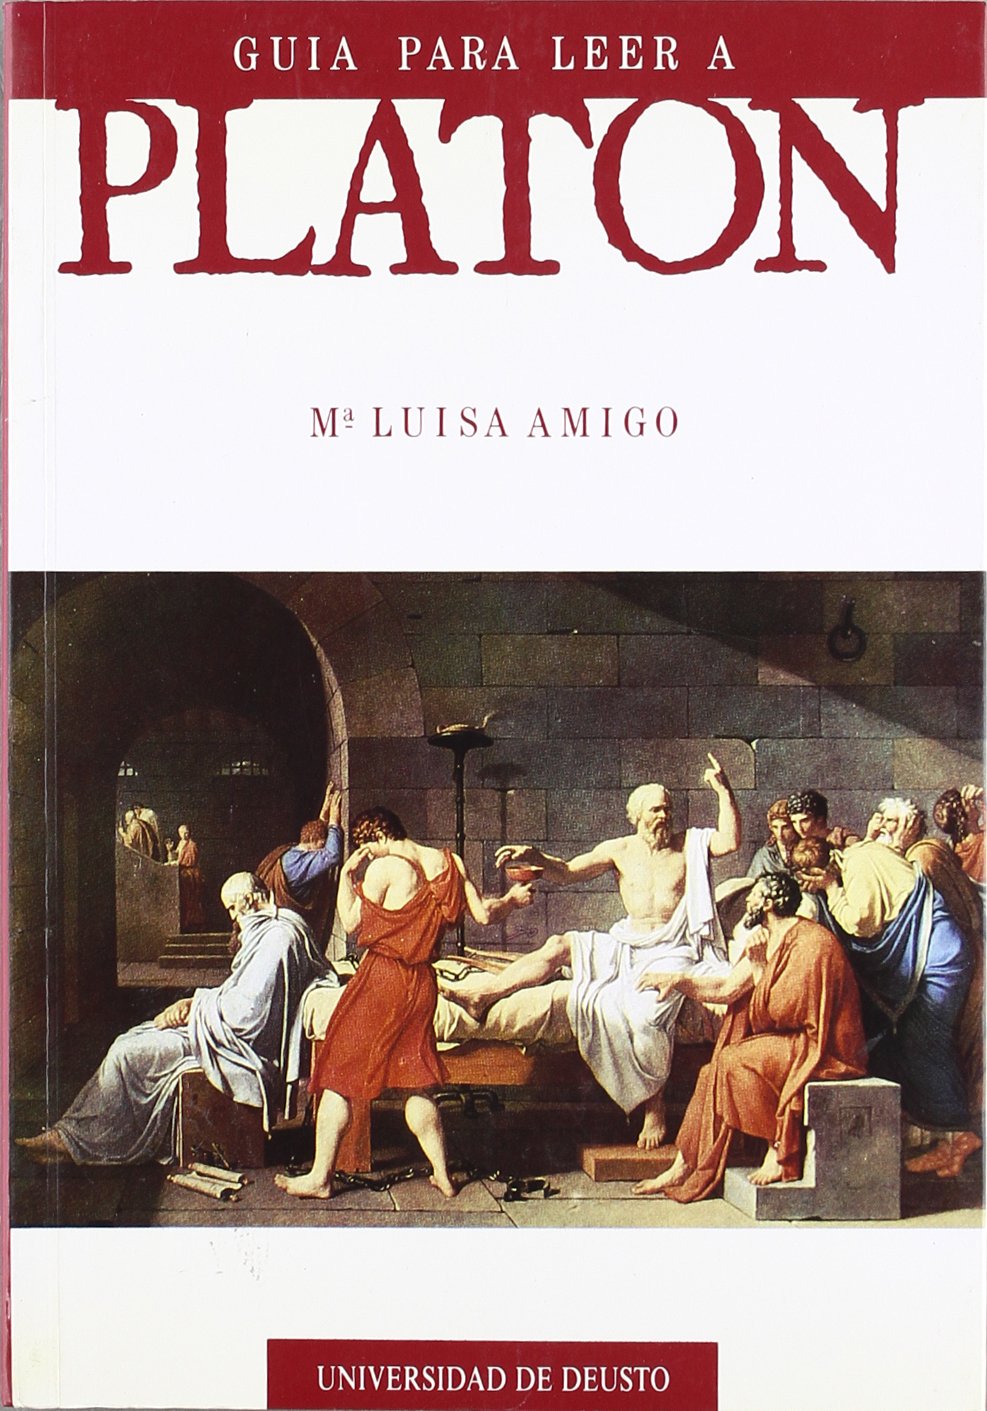 Imagen de portada del libro Guía para leer a Platón